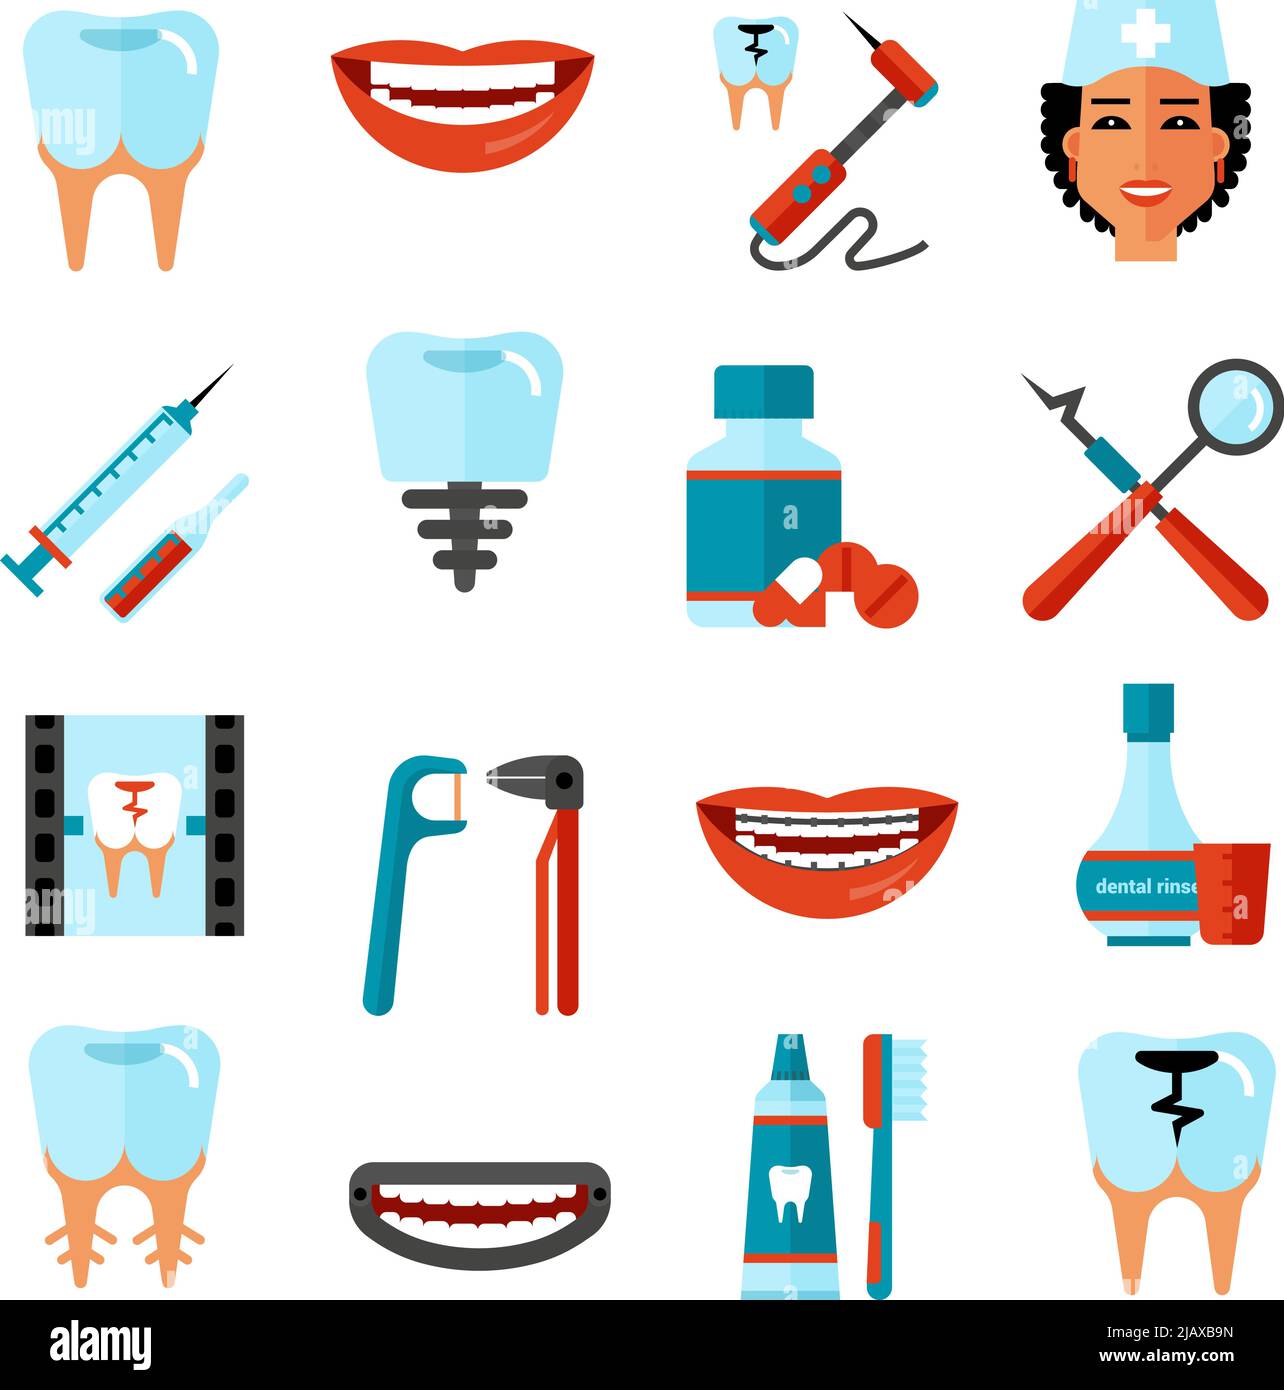 Soins dentaires plat icônes décoratives ensemble avec les outils stomatologist produits de soins dentaires et les symboles de sourire blanc illustration vectorielle isolée Illustration de Vecteur